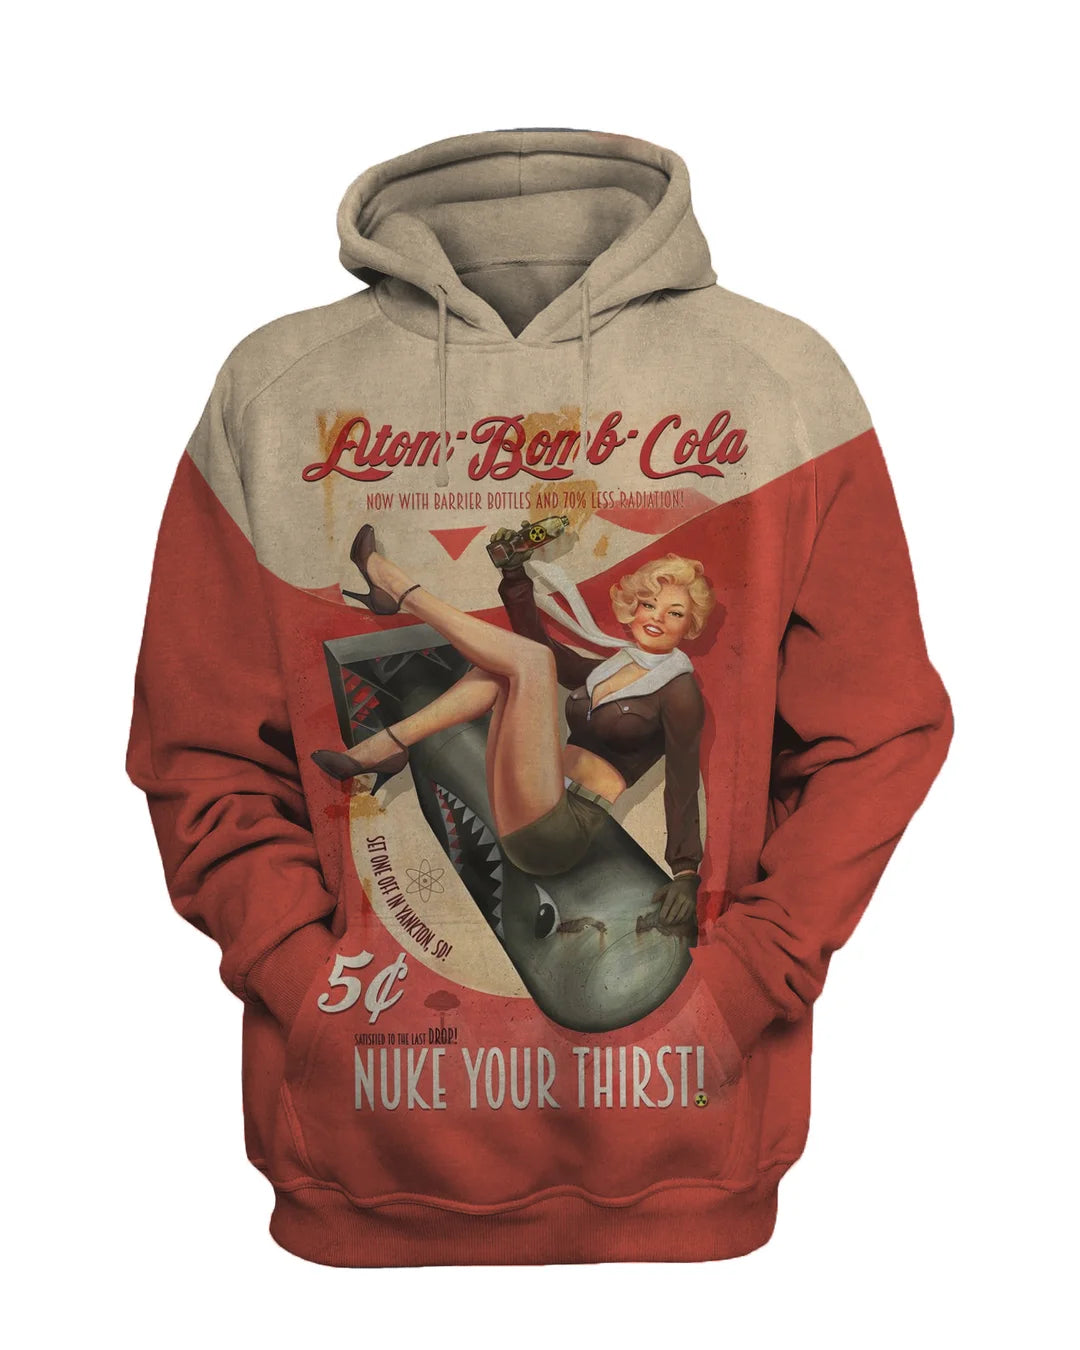 Atom Bomb Cola Fashion Retro Casual Sweatshirt Set